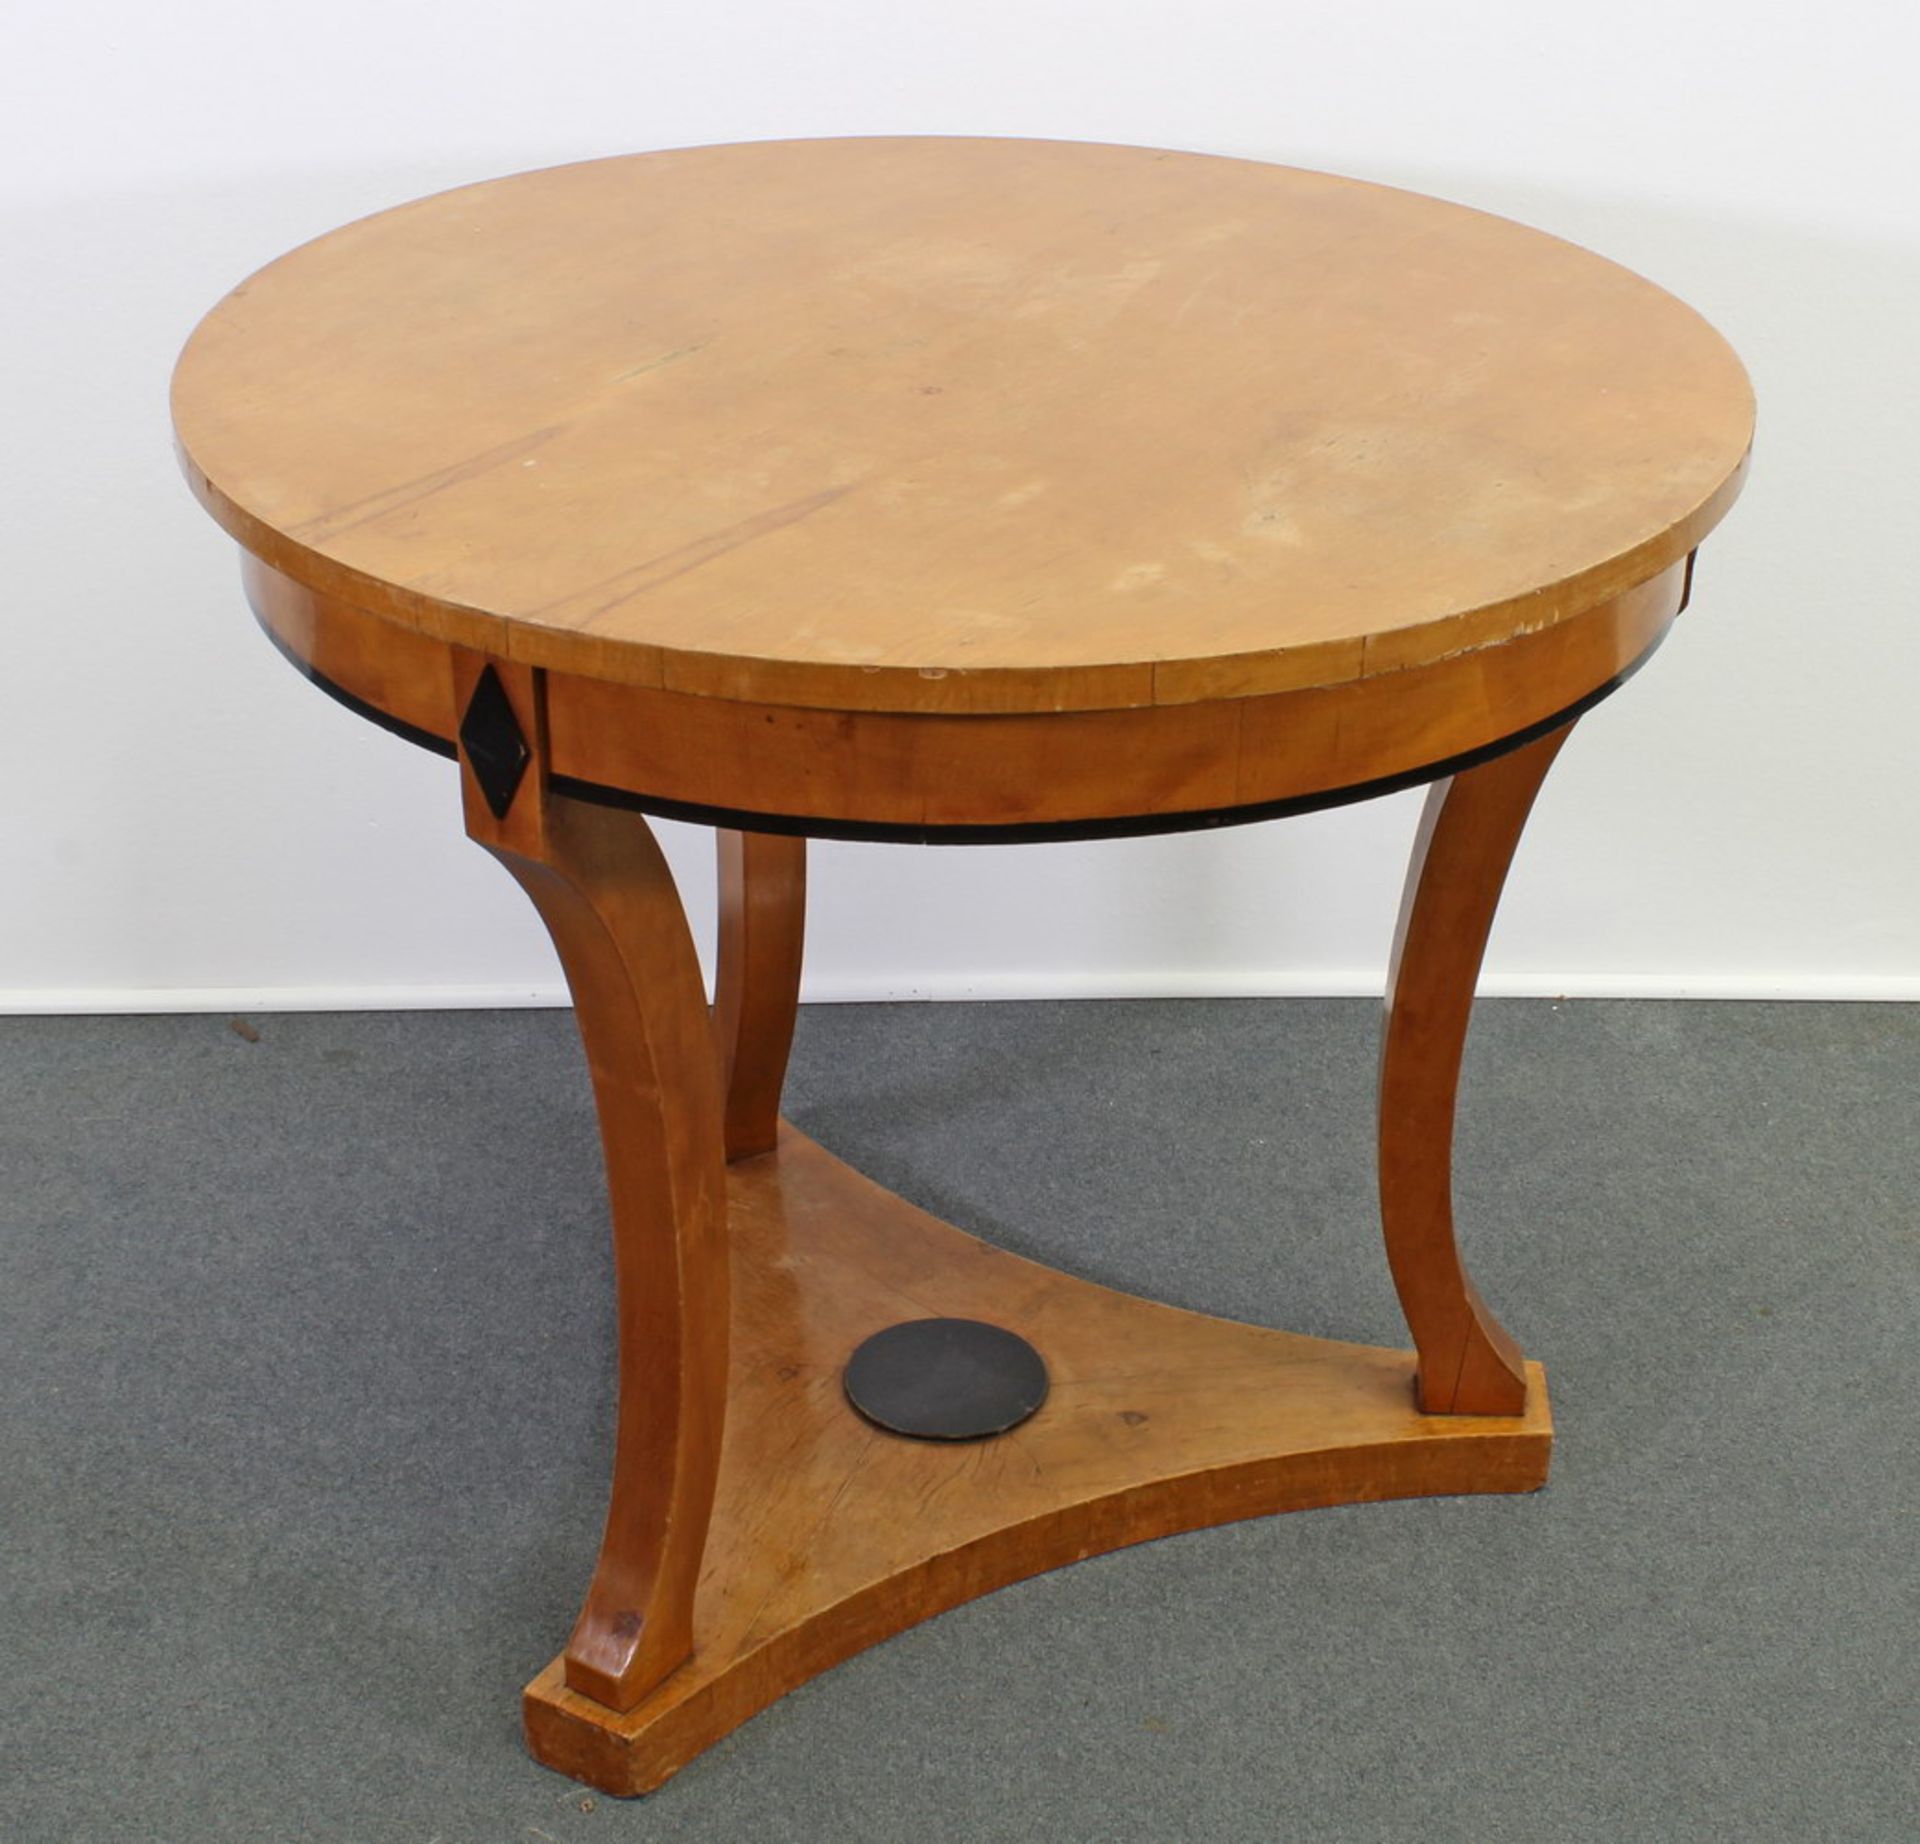 Runder Tisch, Biedermeier, um 1830, kirschbaumfarbig, drei geschwungene Beine auf dreipassigem